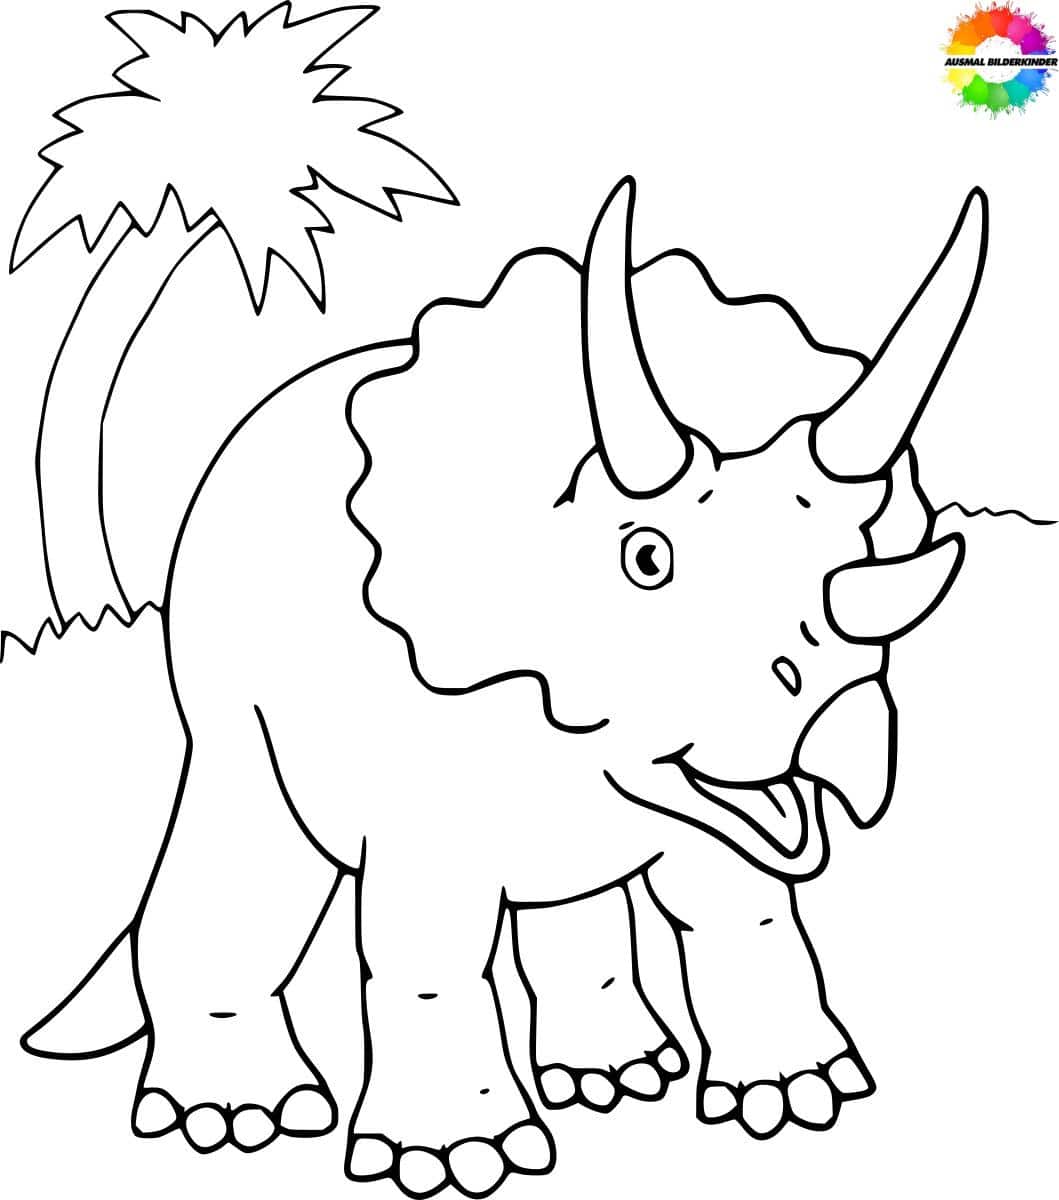 ausmalbilderkinder.de – Ausmalbilder Triceratops 22